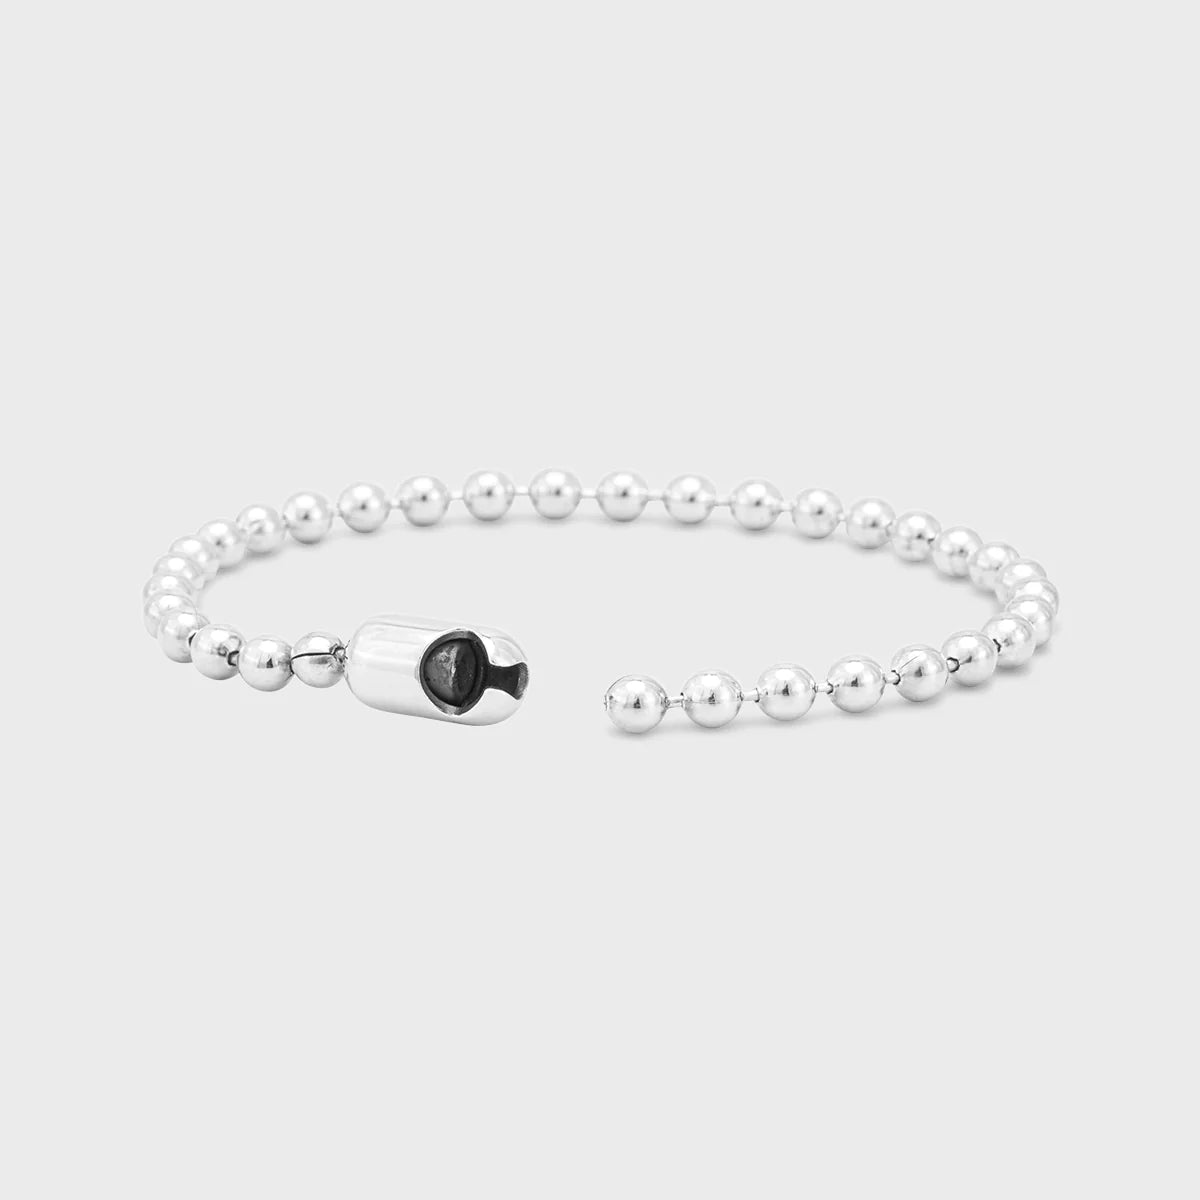 Good Art Poplock ball Chain Bracelet